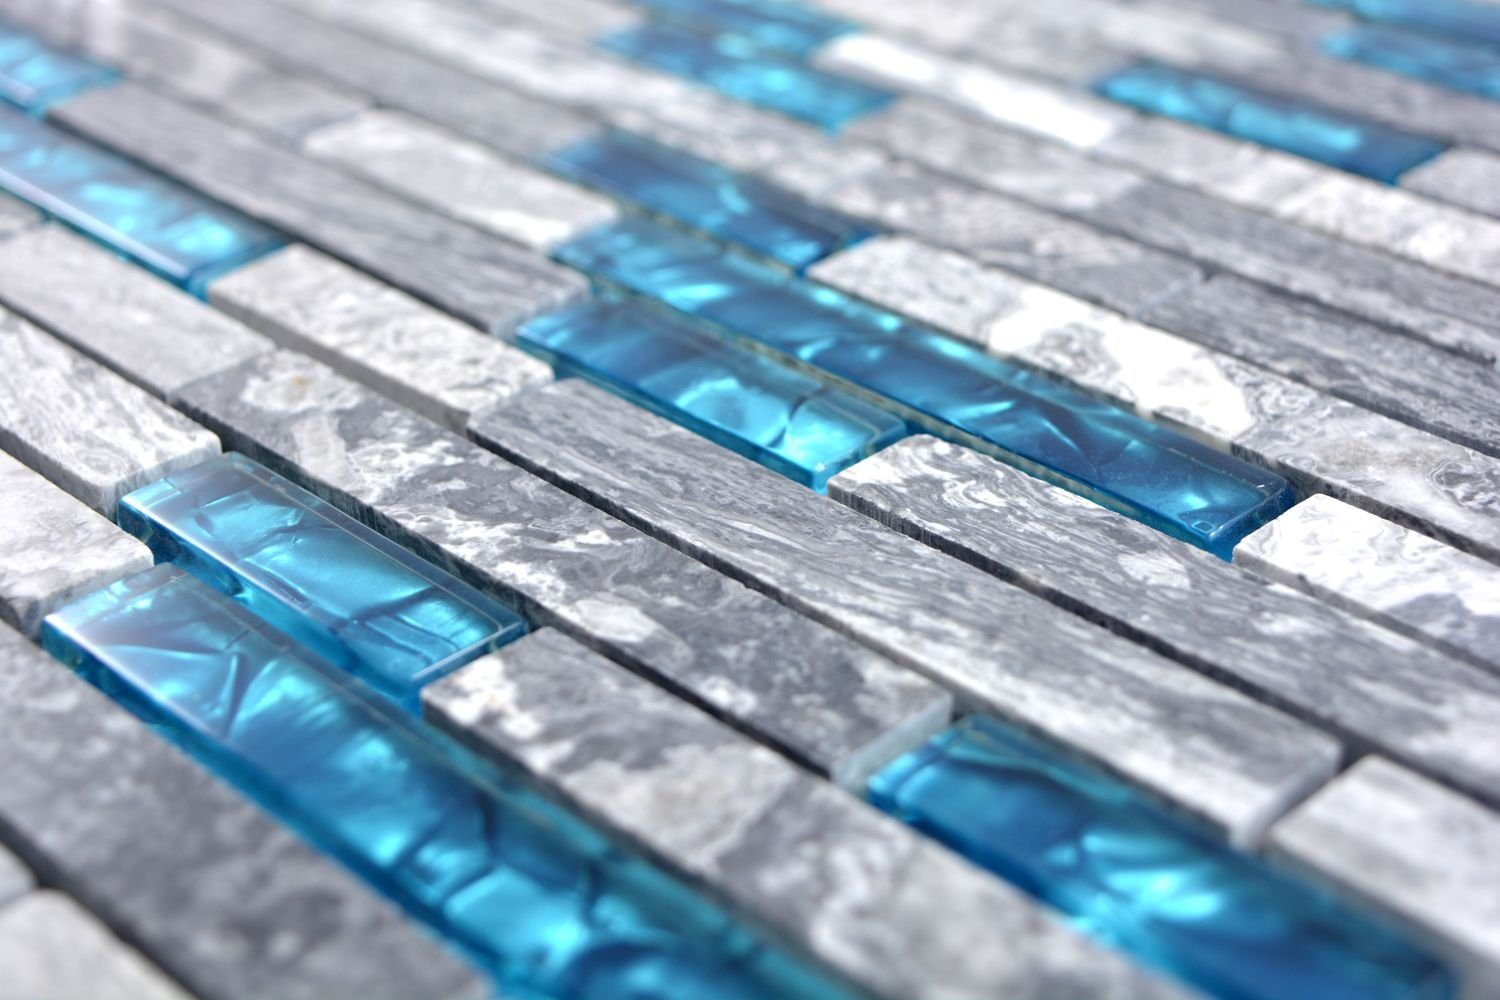 Mosani Wandfliese 0,87m² Marmor 10-teillig, Blau, Fliesen Glasmosik Mosaikfliesen Naturstein Grau Set, Dekorative Wandverkleidung